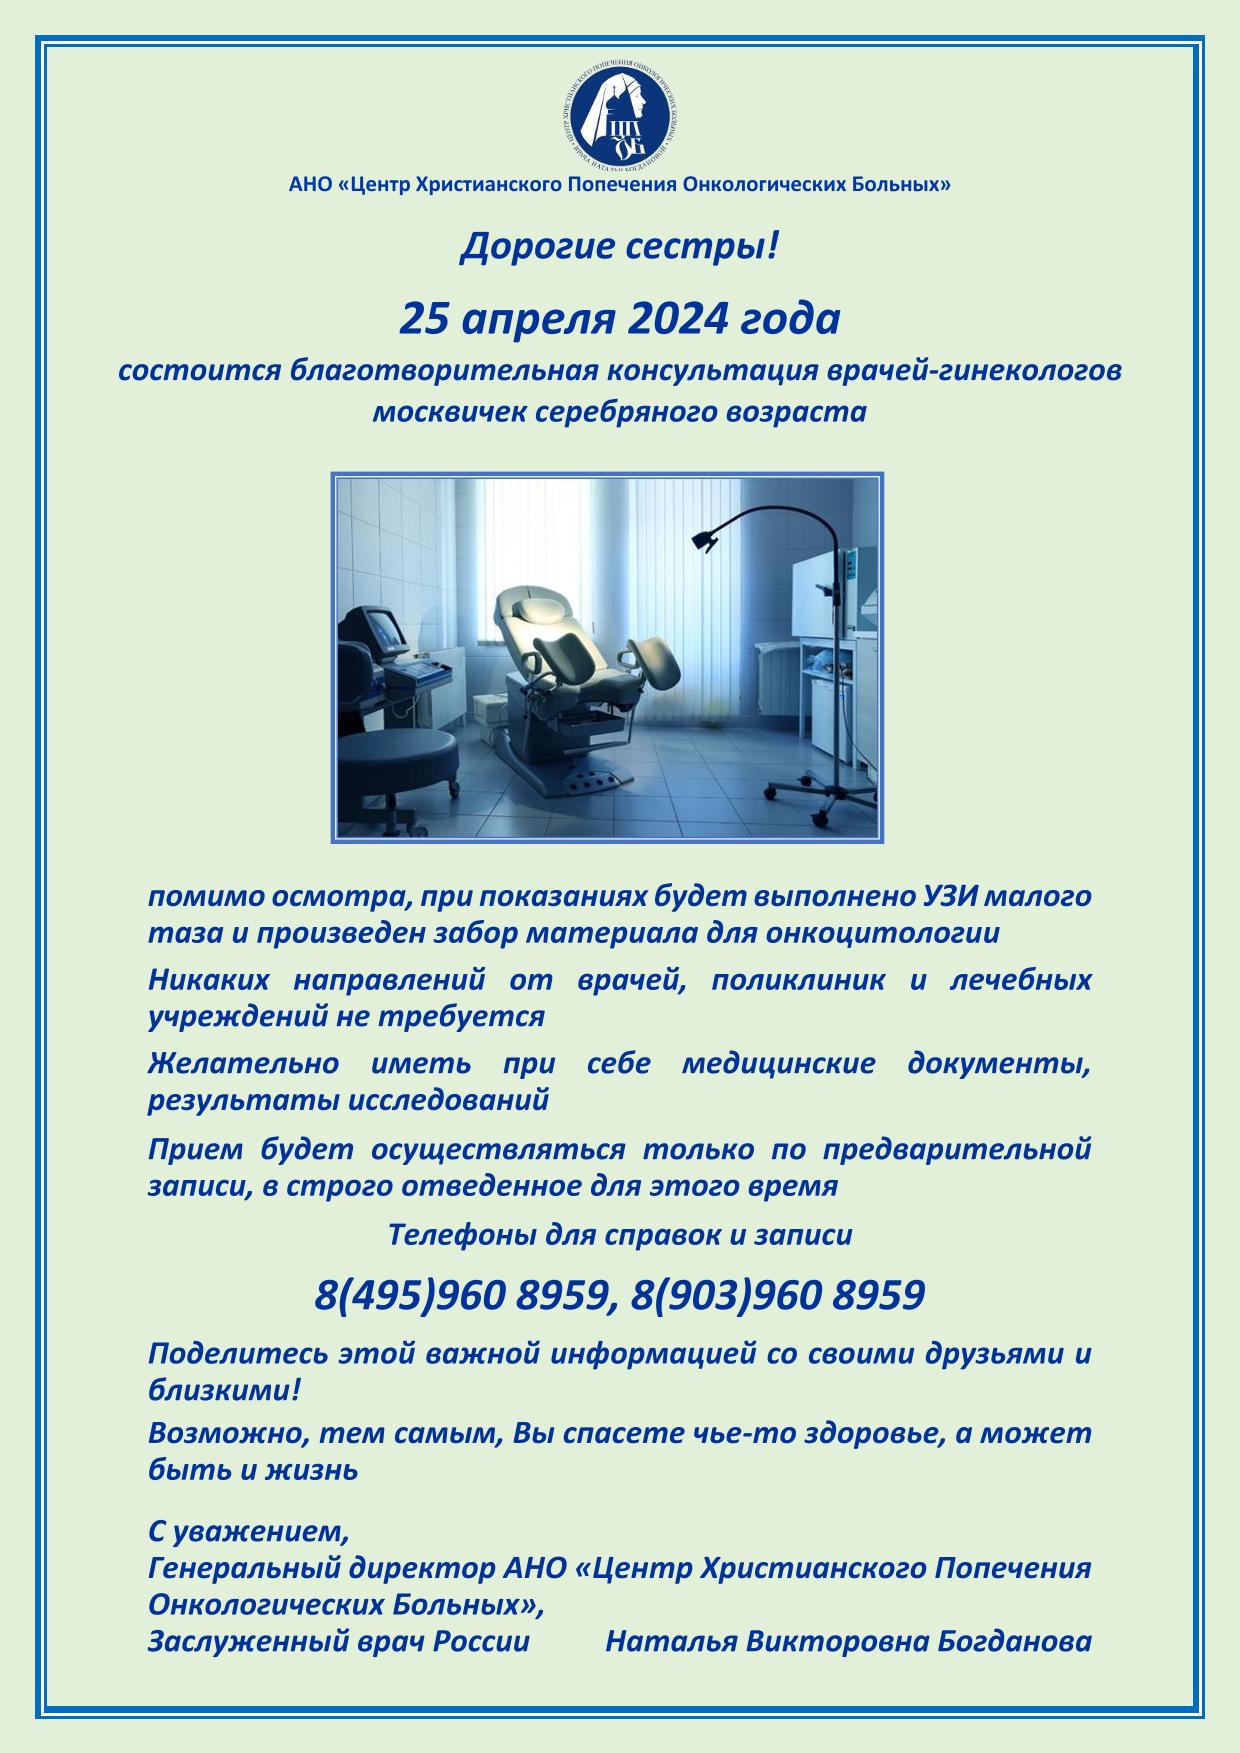 25 апреля 2024 года состоится благотворительная консультация врачей - гинекологов москвичек серебряного возраста